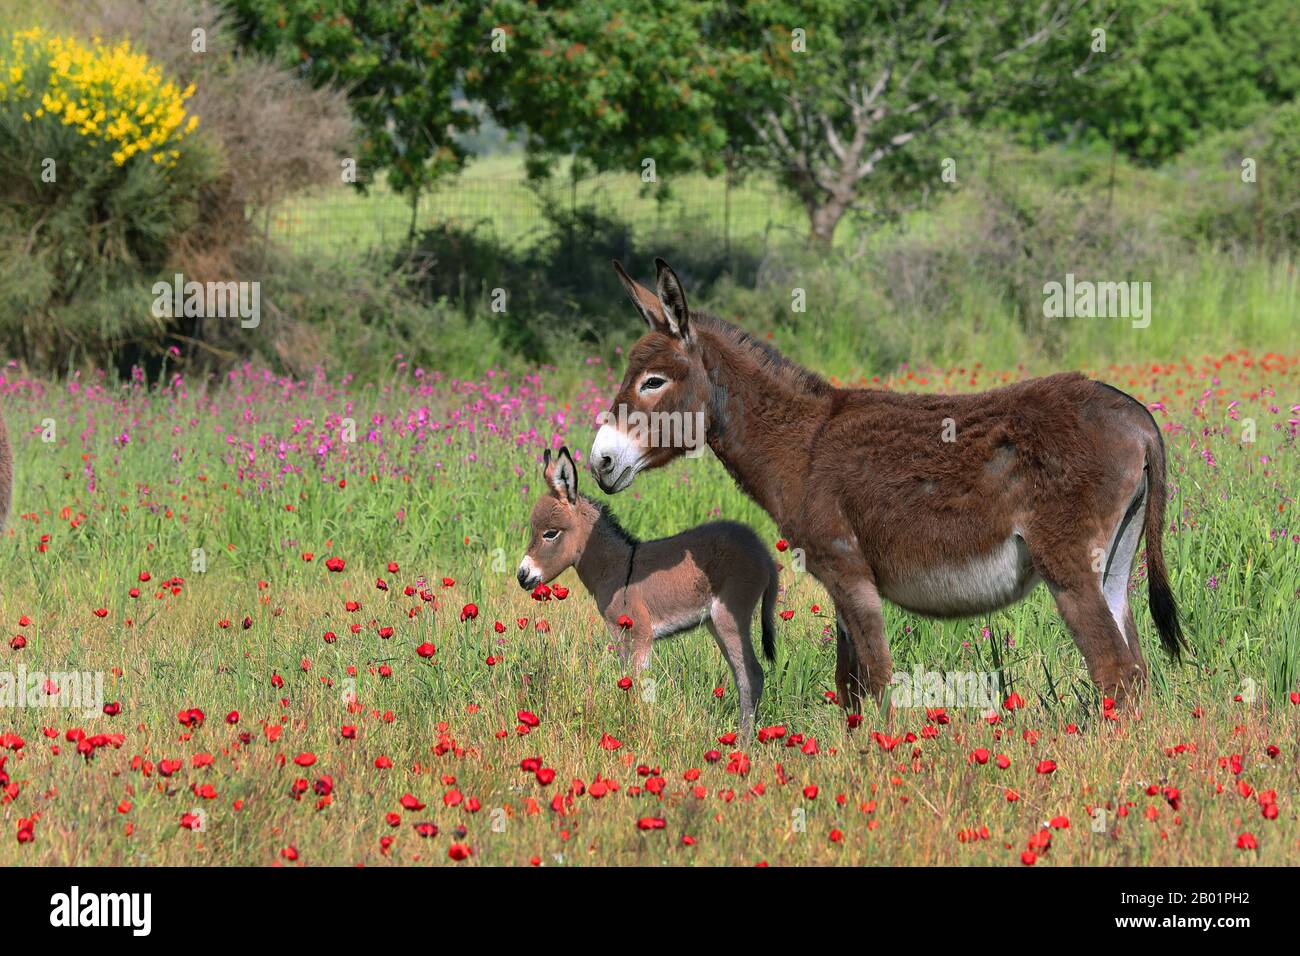 Burro doméstico (Equus asinus asinus), yegua y foal en un prado en flor, Grecia, Lesbos Foto de stock